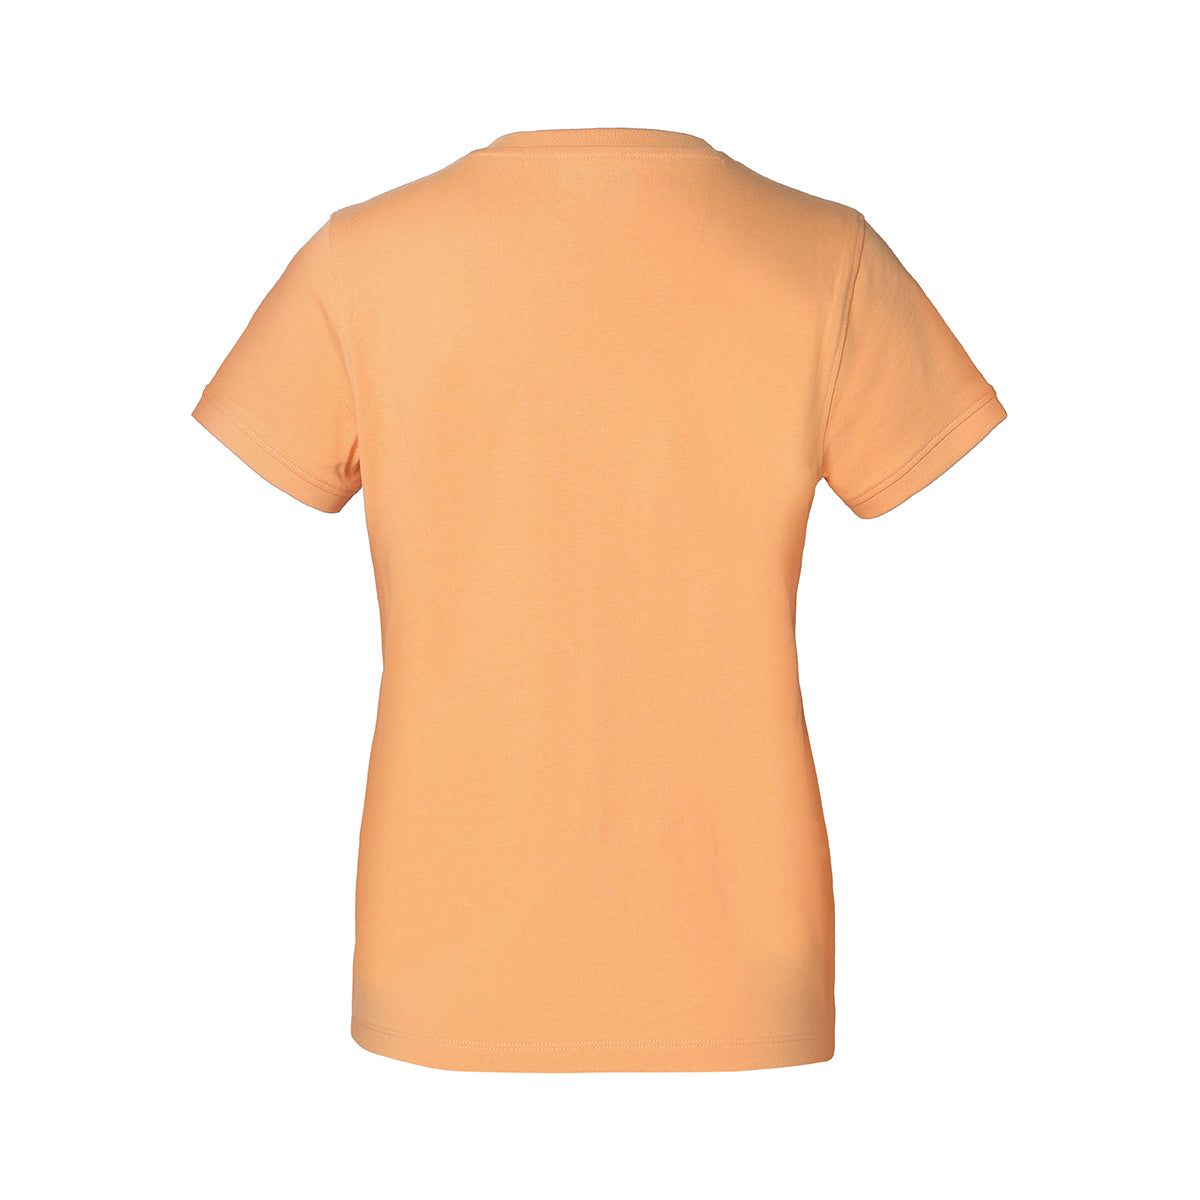 Camiseta Naranja Cabou Mujer - imagen 5